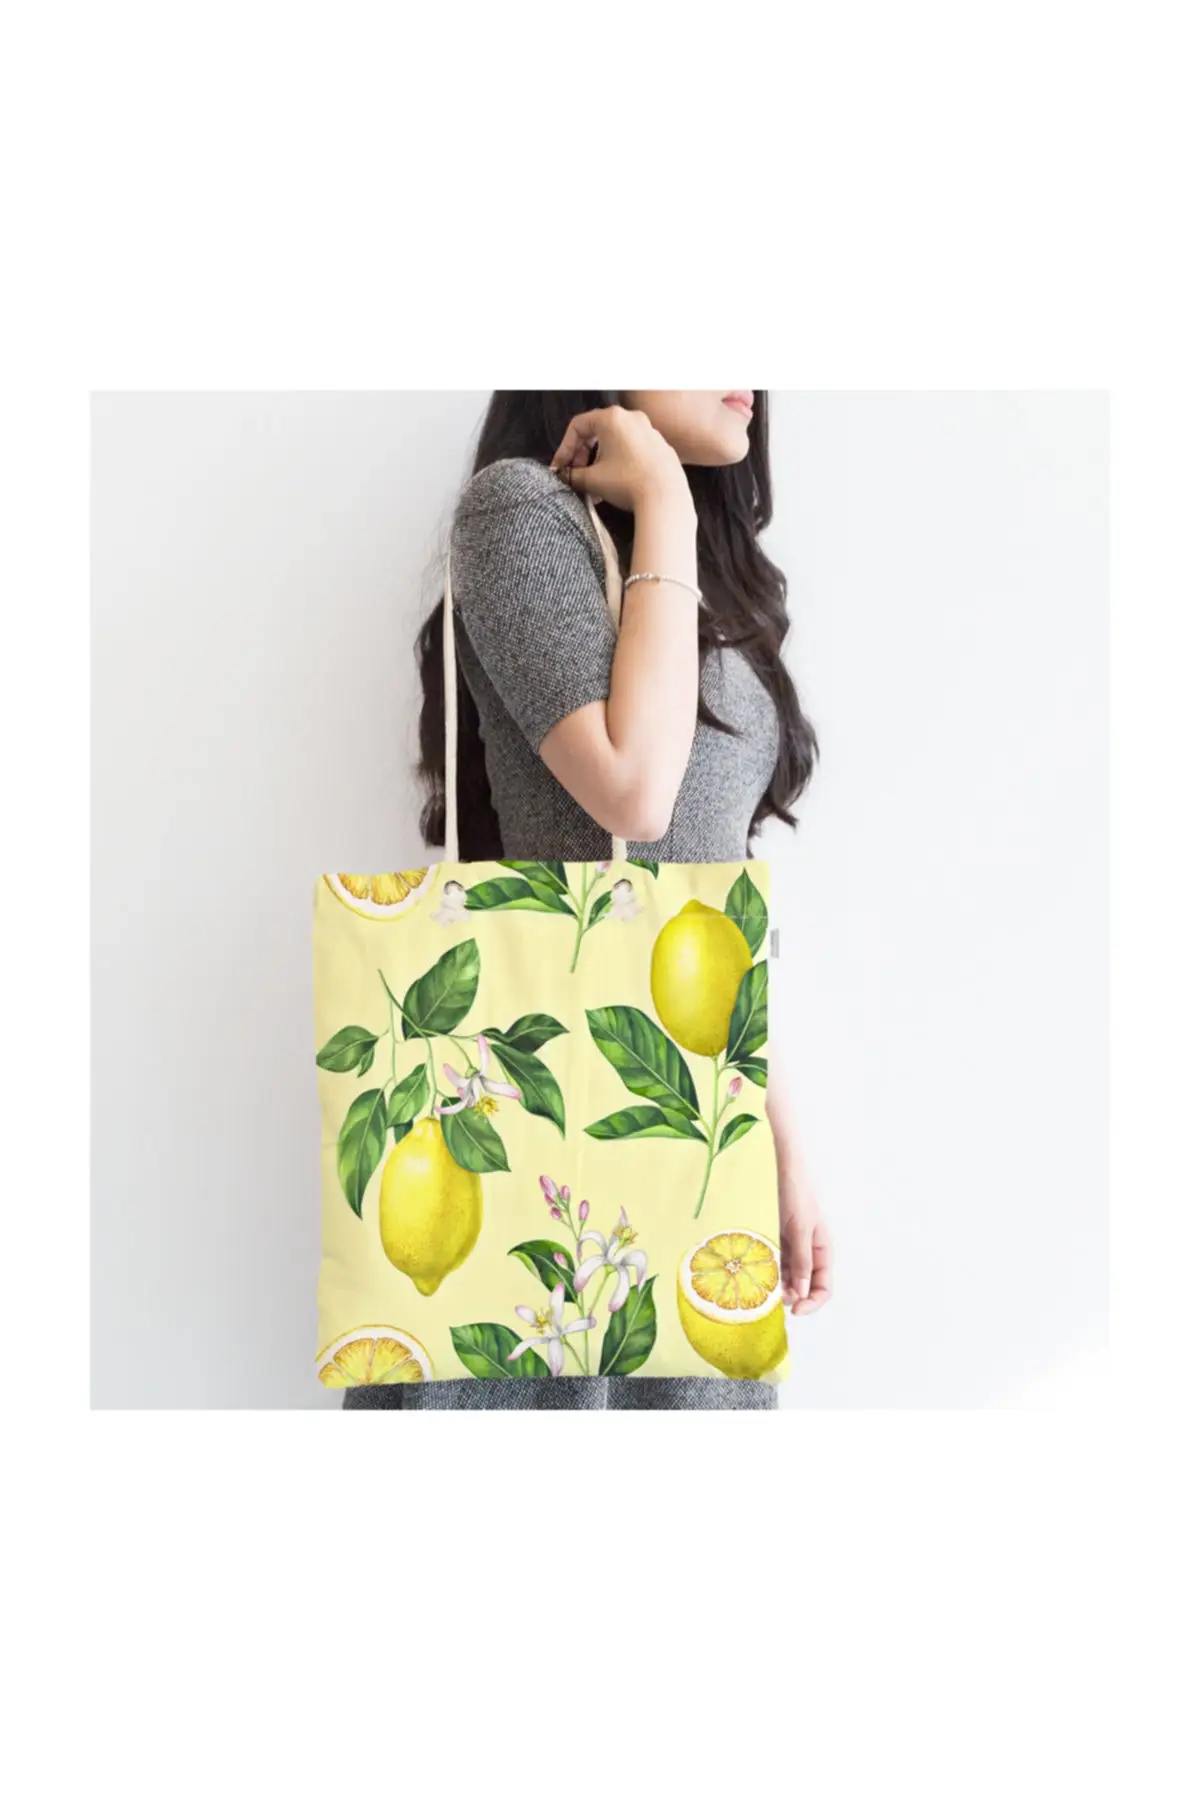 

Женская пляжная сумка на молнии, специальная дизайнерская тканевая сумка-тоут с принтом лимона и цифровым принтом, летние сумки для покупок